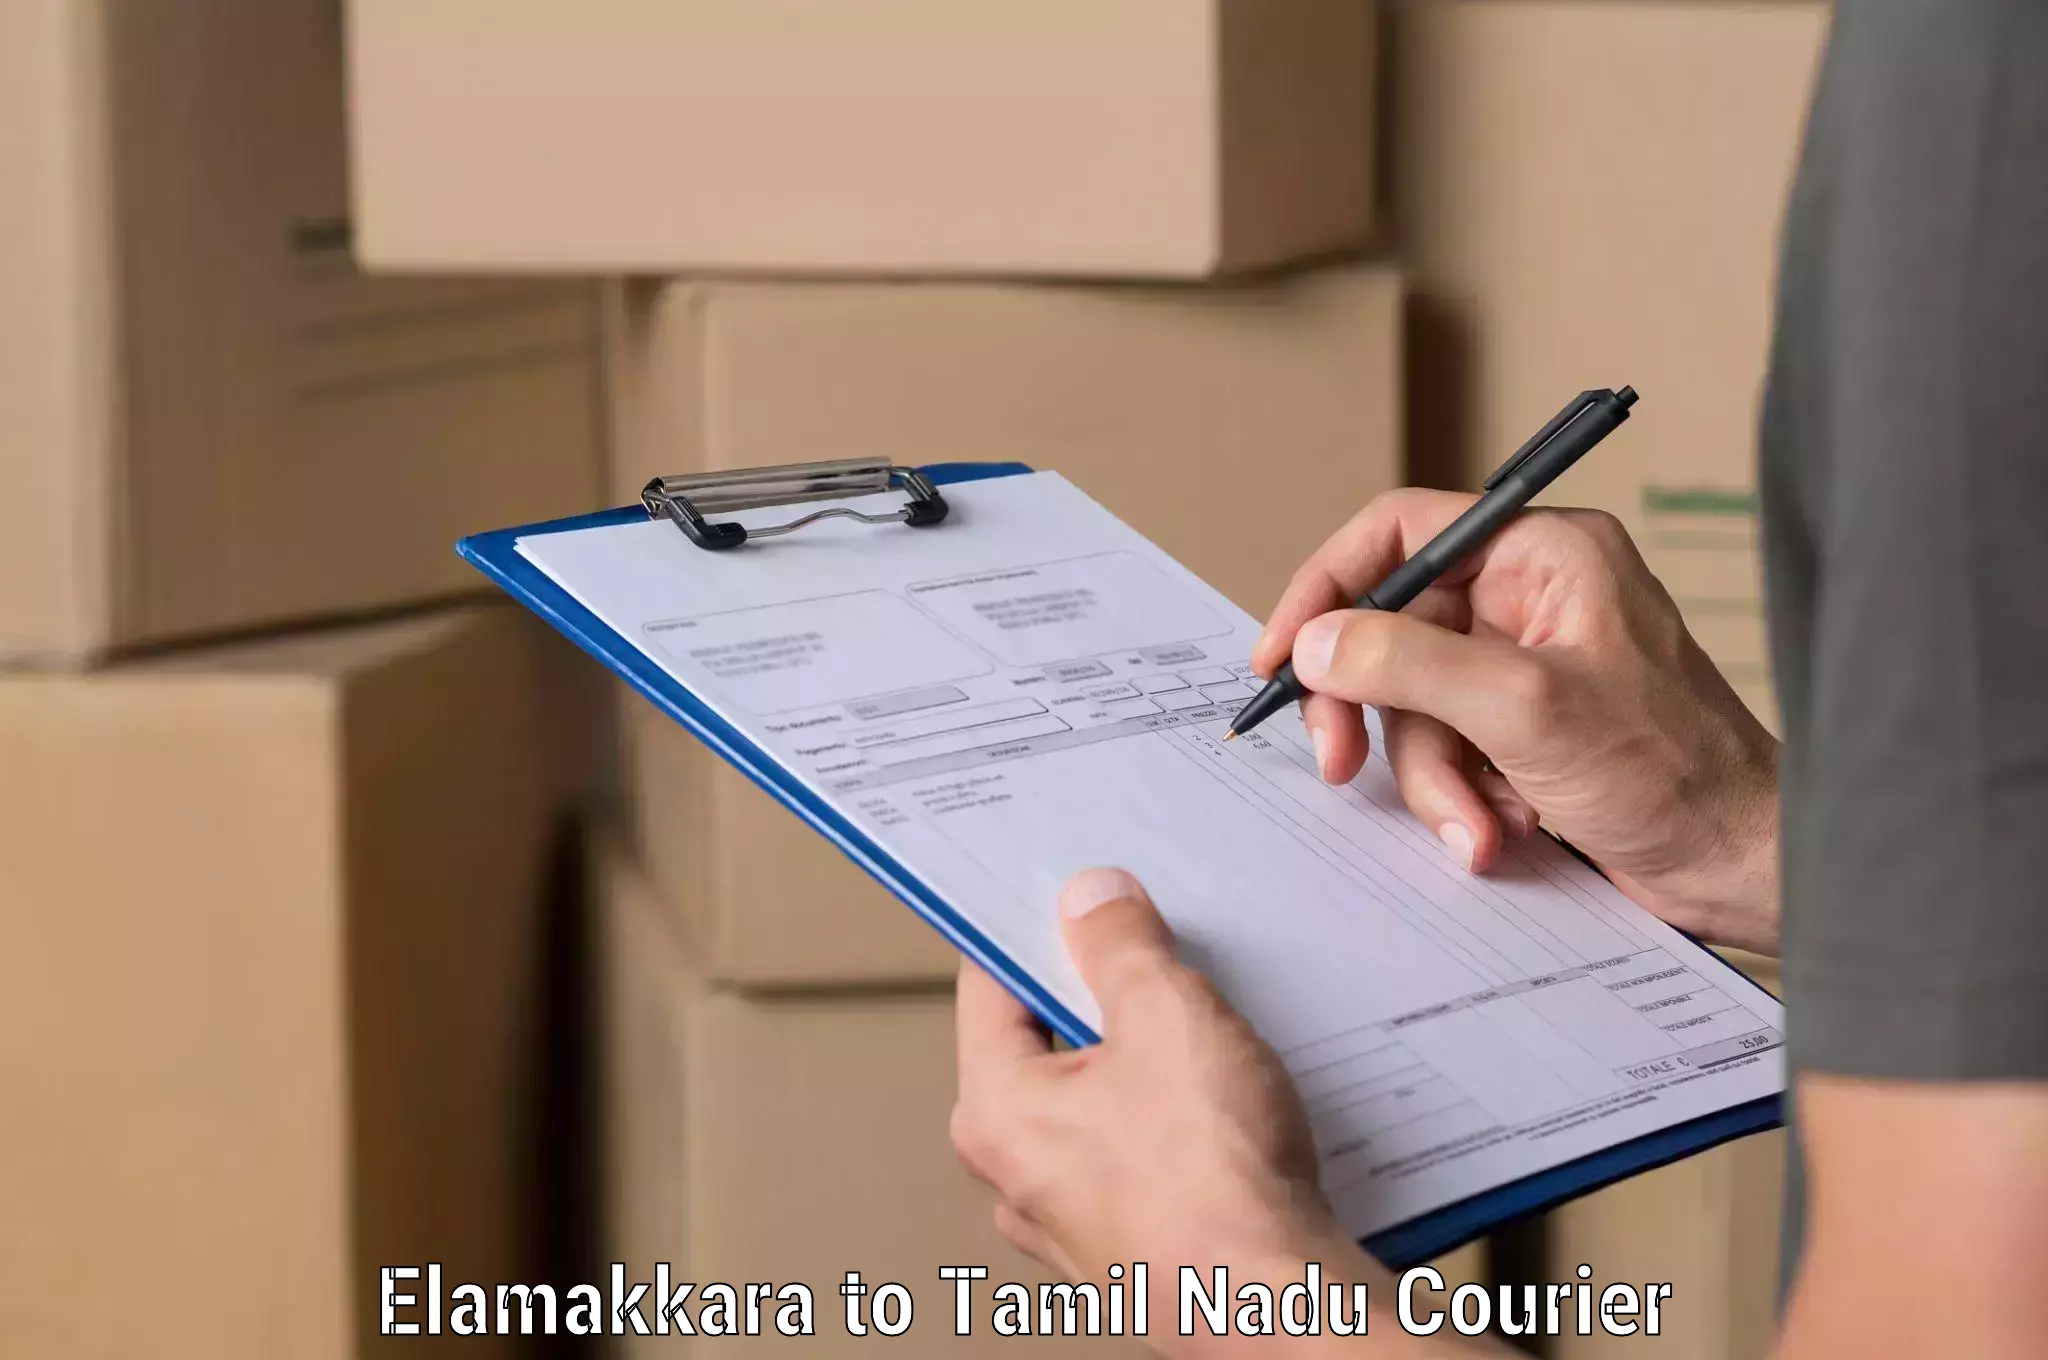 Customer-centric shipping in Elamakkara to Tamil Nadu